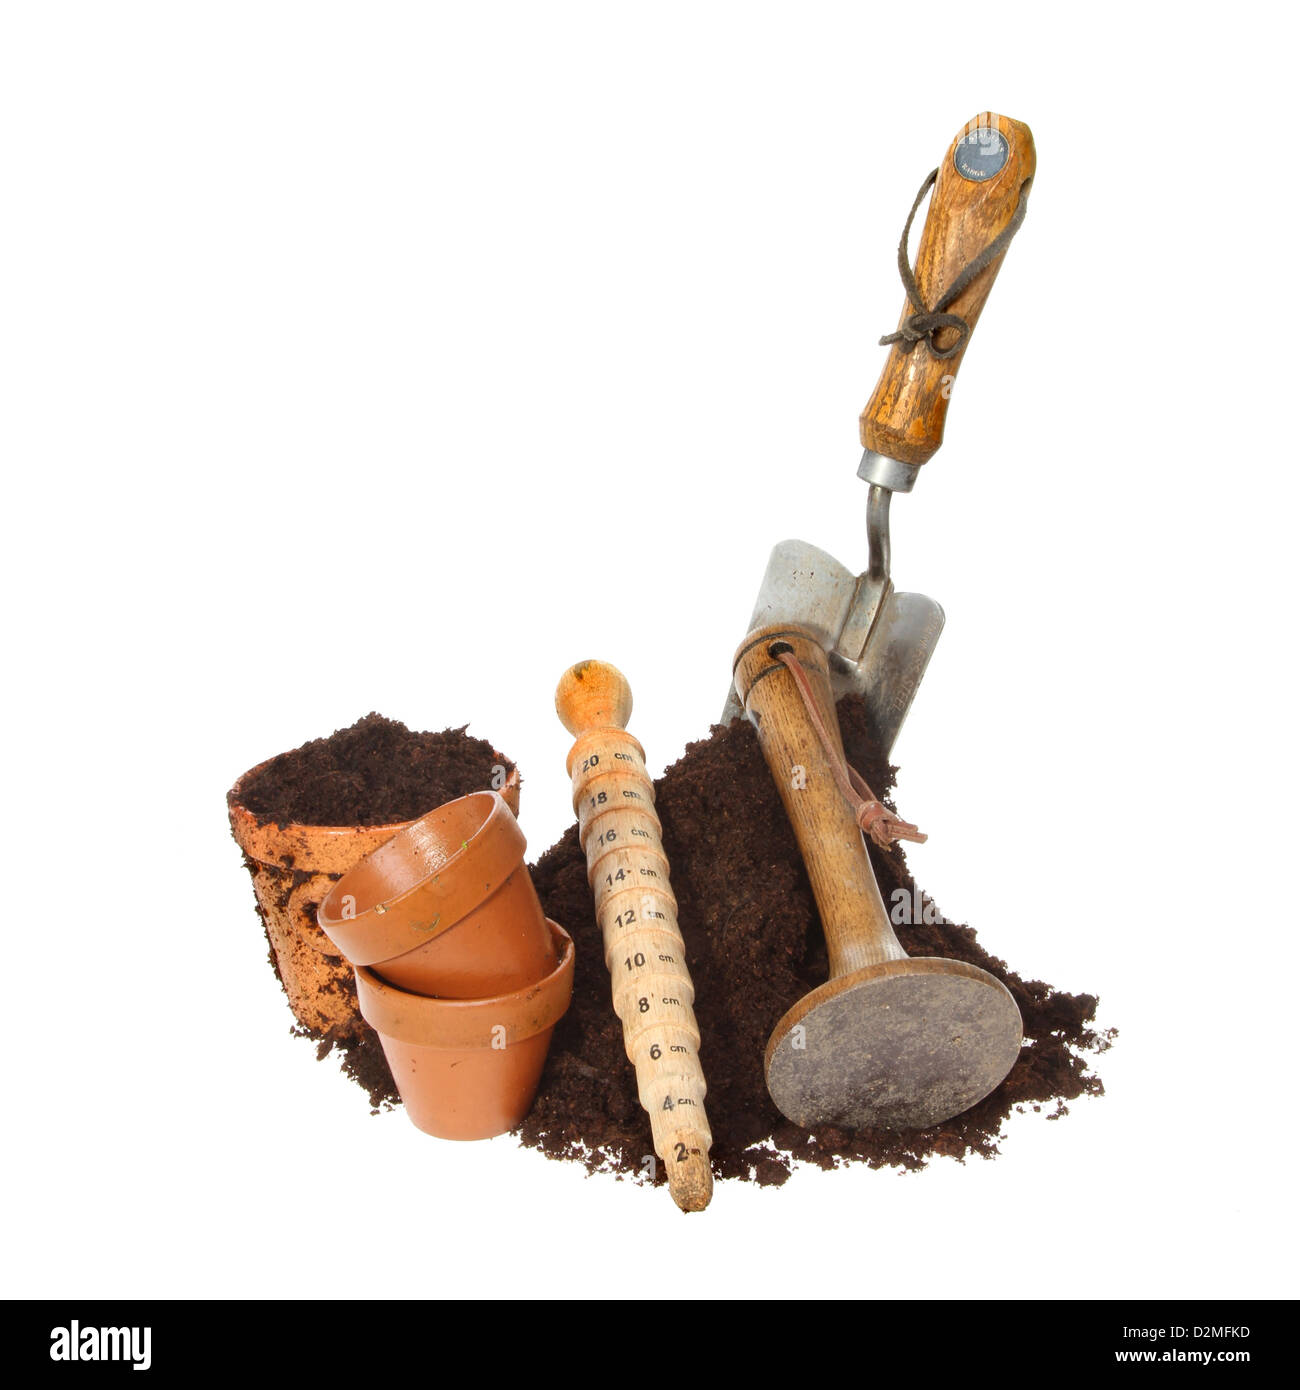 Las herramientas de jardín y macetas de terracota con un montón de tierra aislado contra un blanco Foto de stock